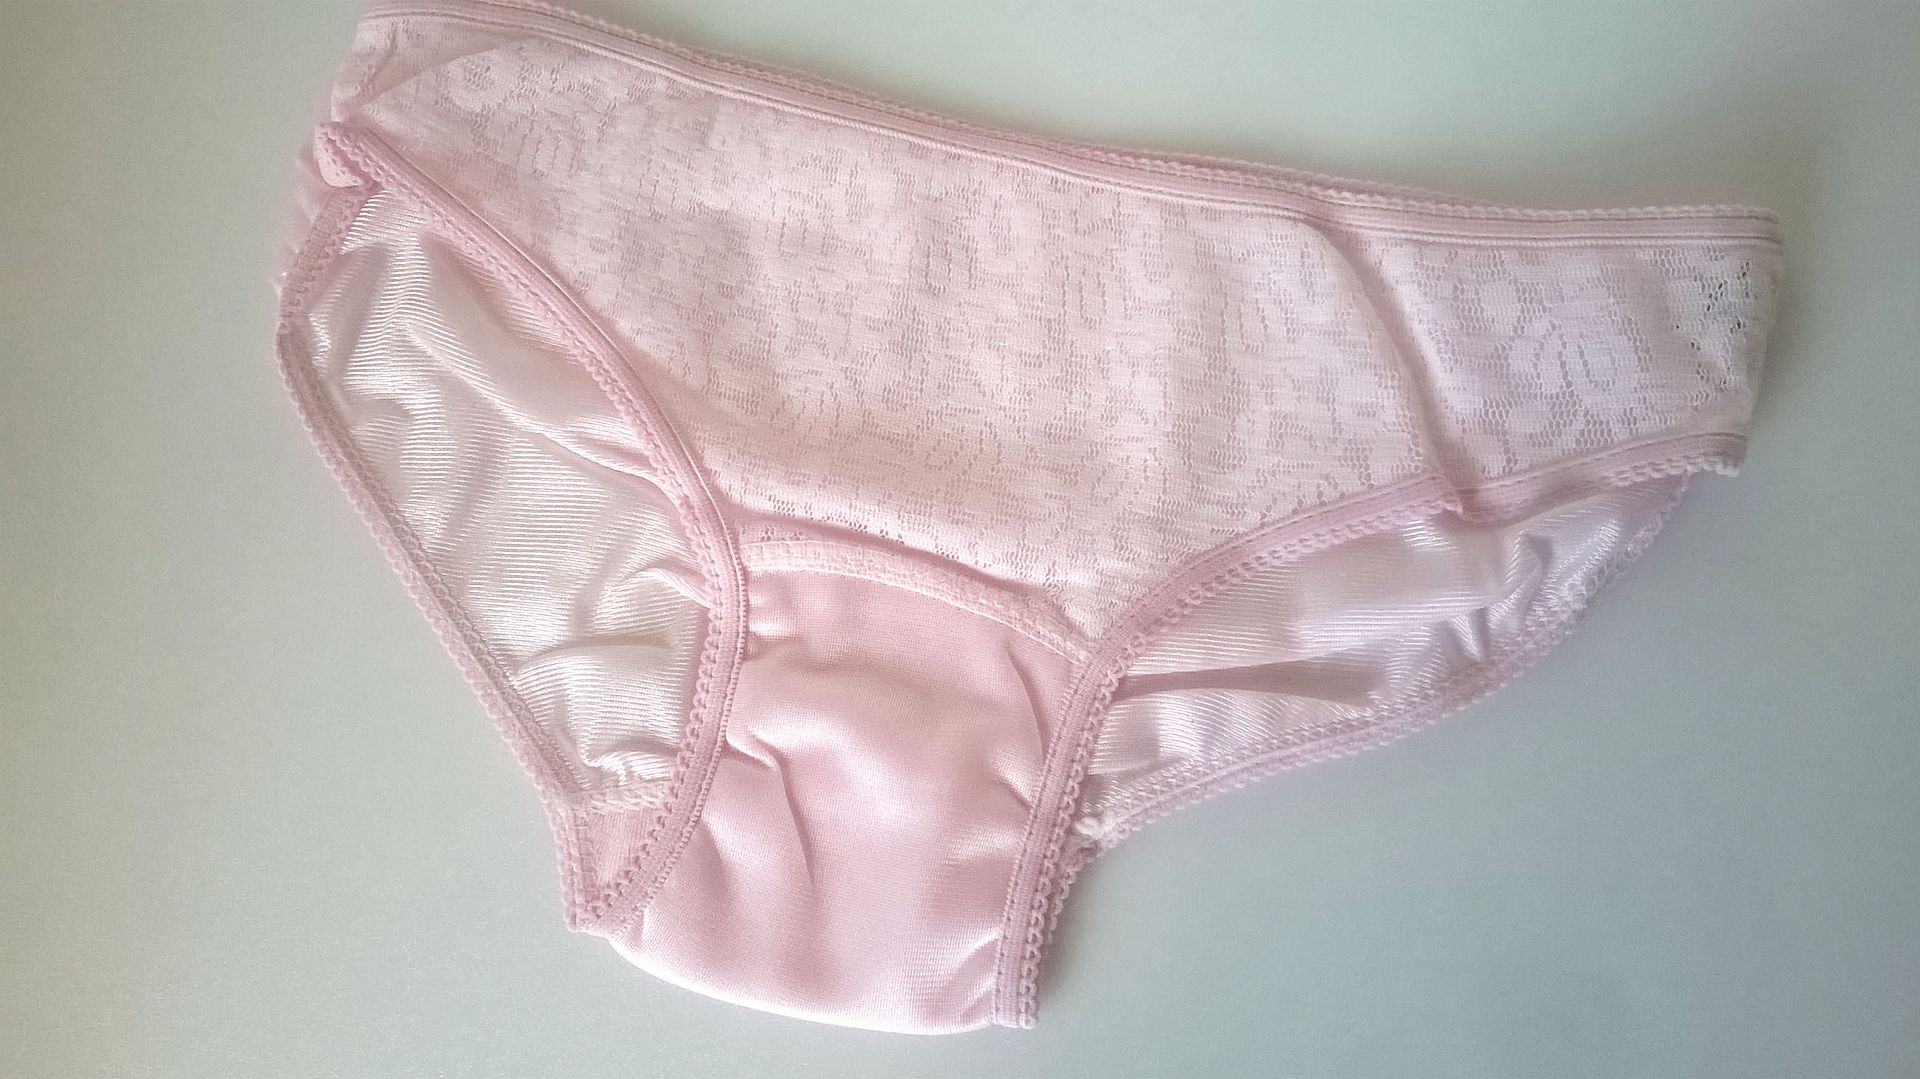 Ladies Or Teen Girls Silky Pink Nylon Lace 1960 S Panties Knickers S 8 10 Ebay